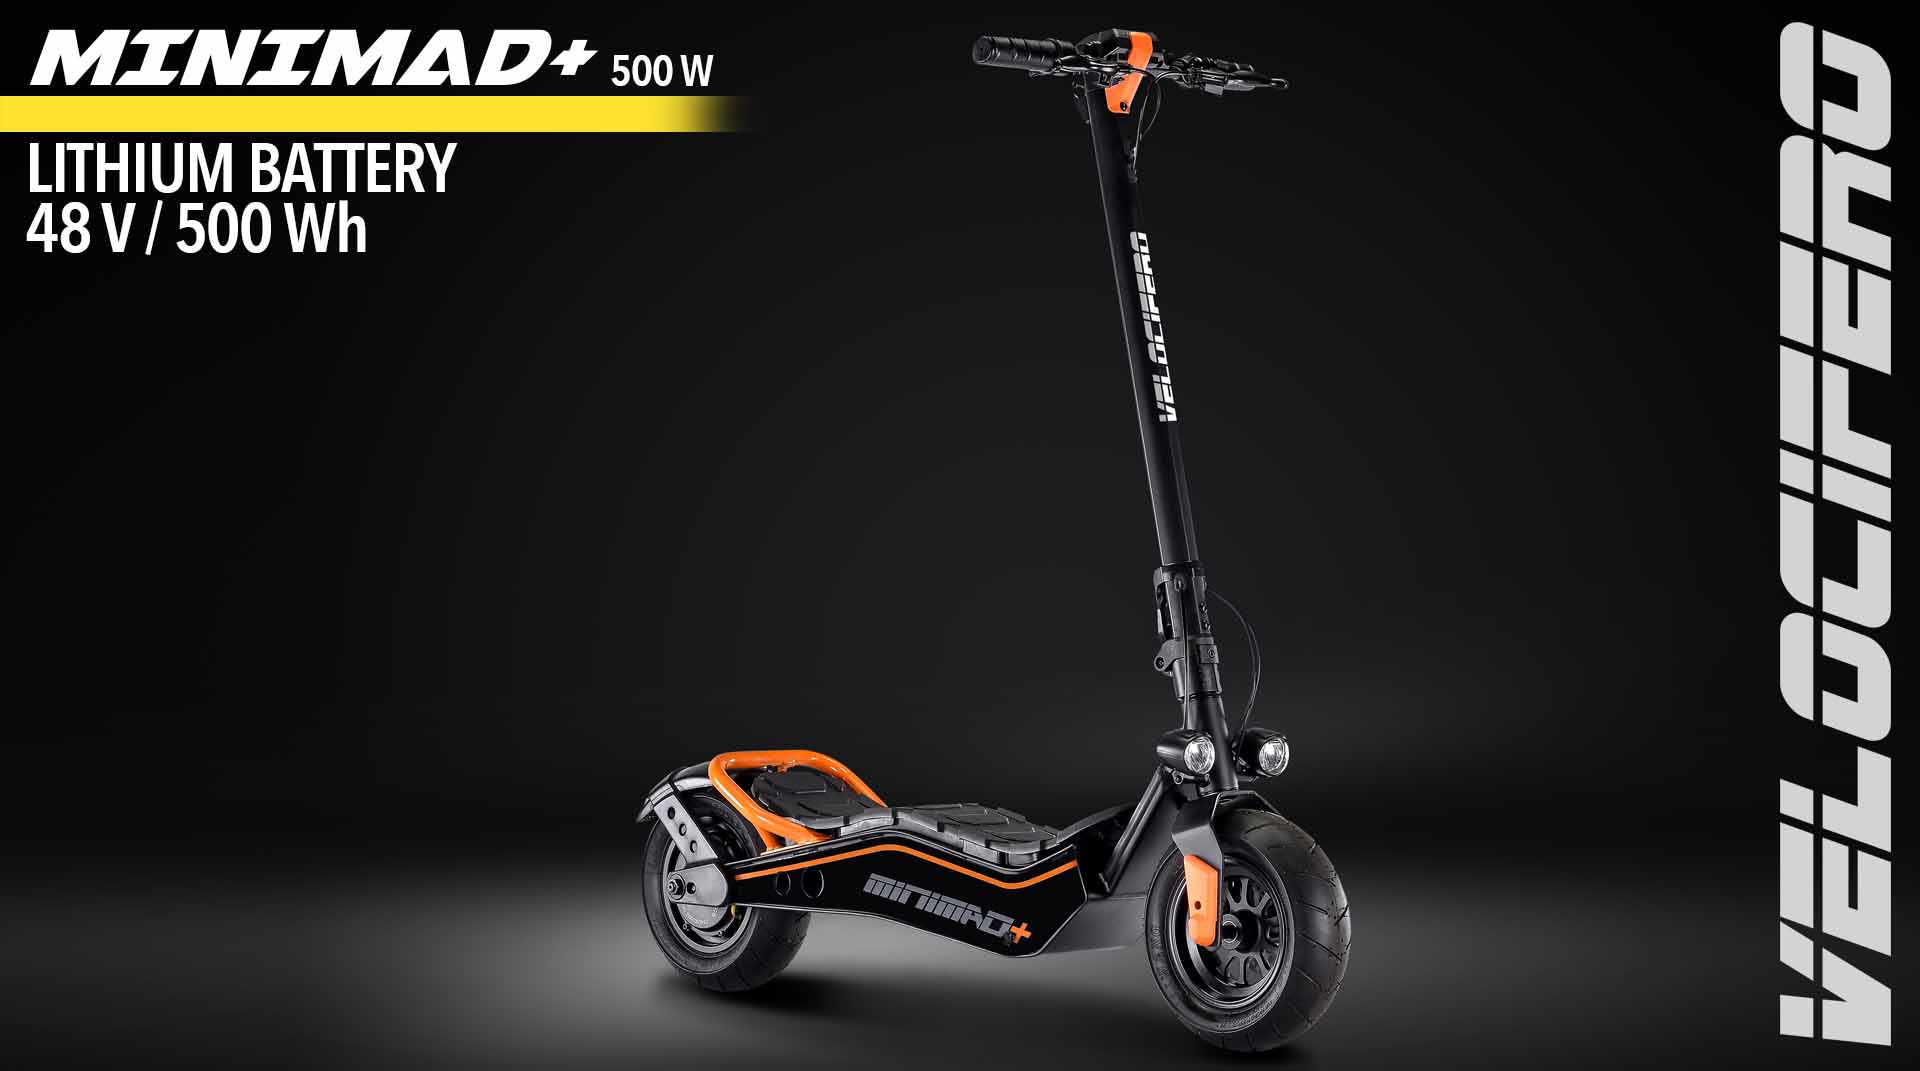 mini mad+ 500w electric kick scooter velocifero emobility